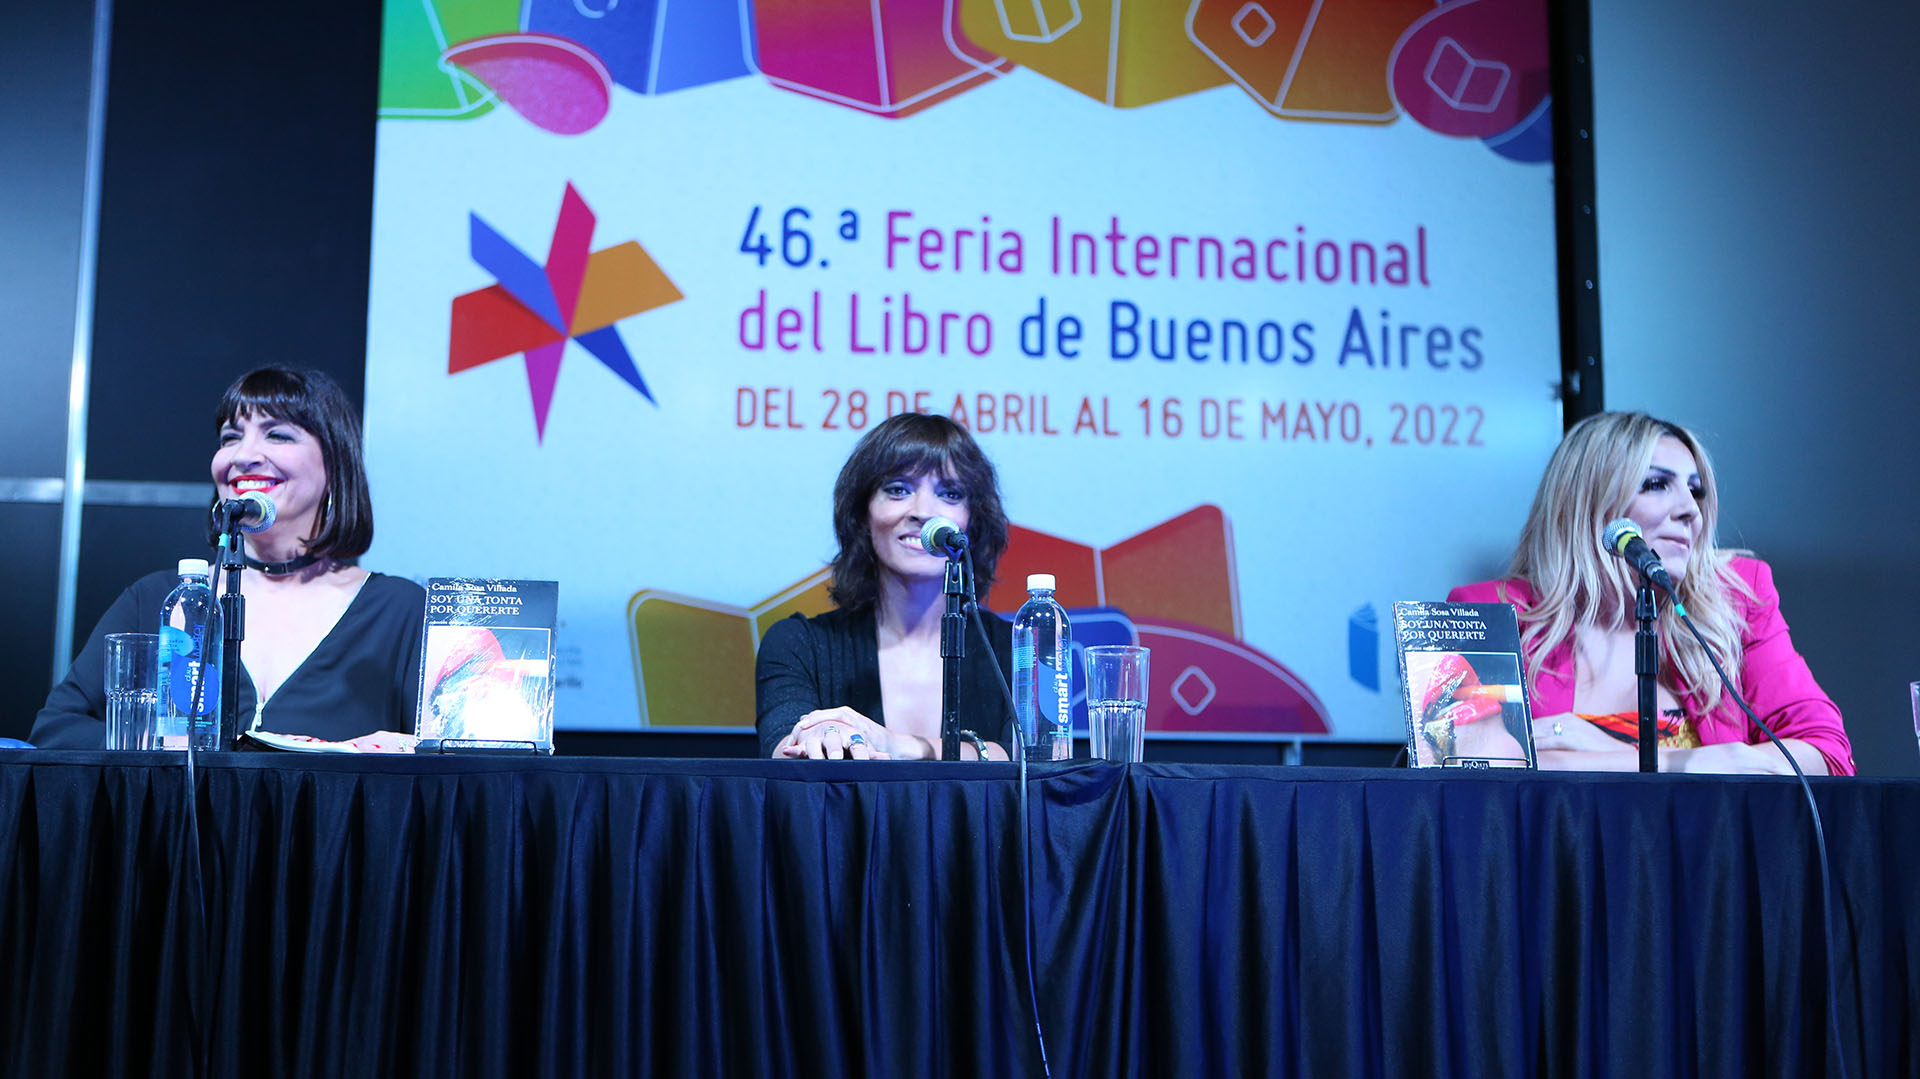 Camila Sosa Villada presenta “Soy una tonta por quererte” junto a Elizabeth “la Negra” Vernaci y Bárbara Di Rocco. (Foto: Matías Arbotto)